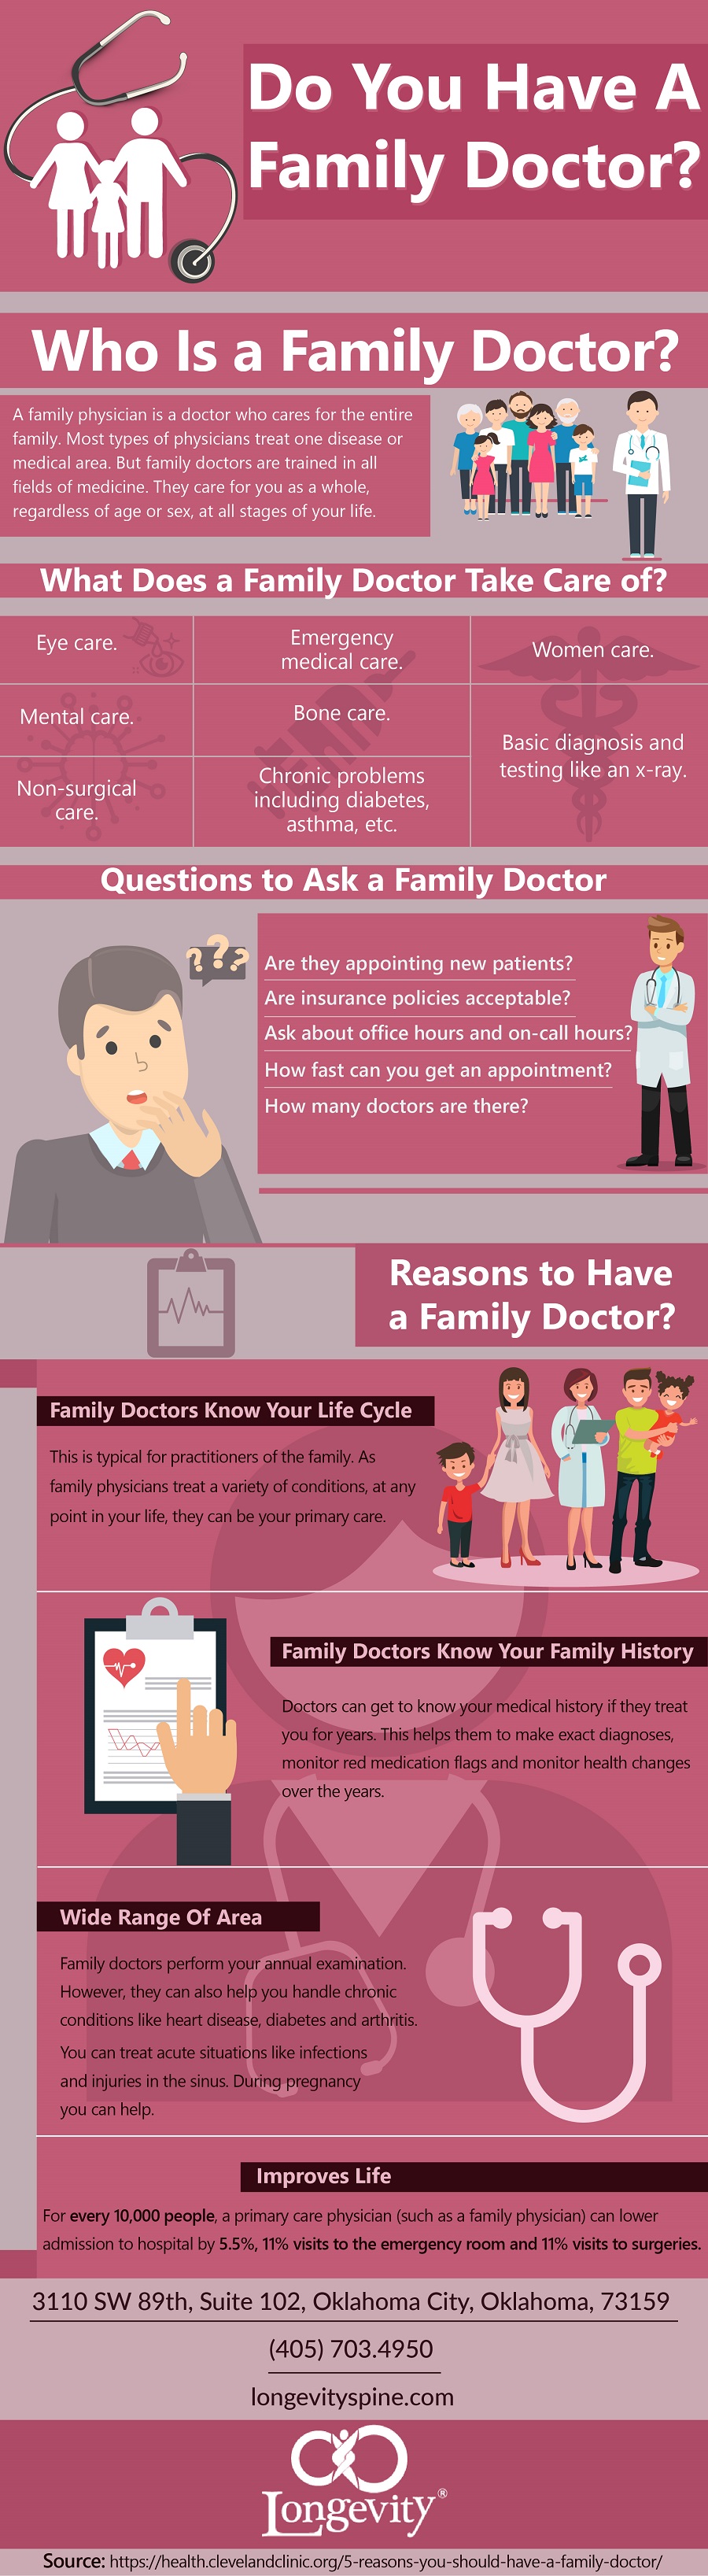 family doctor infographic.jpg